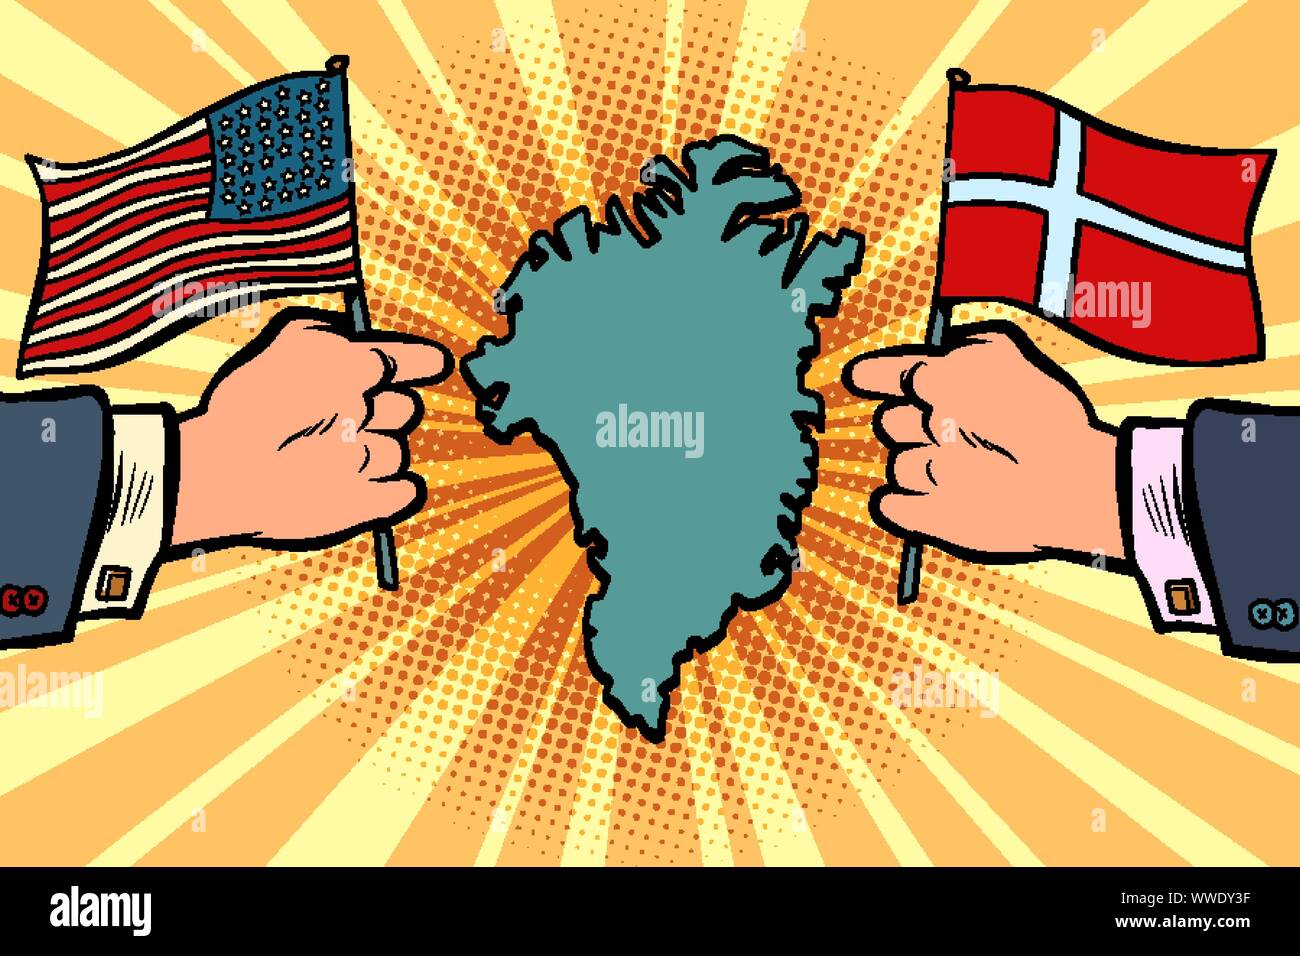 USA v. Dänemark, Streit über Grönland. Hände von Politikern mit nationalen Flaggen. Comic cartoon Pop Art retro Vektor illustration Zeichnung Stock Vektor